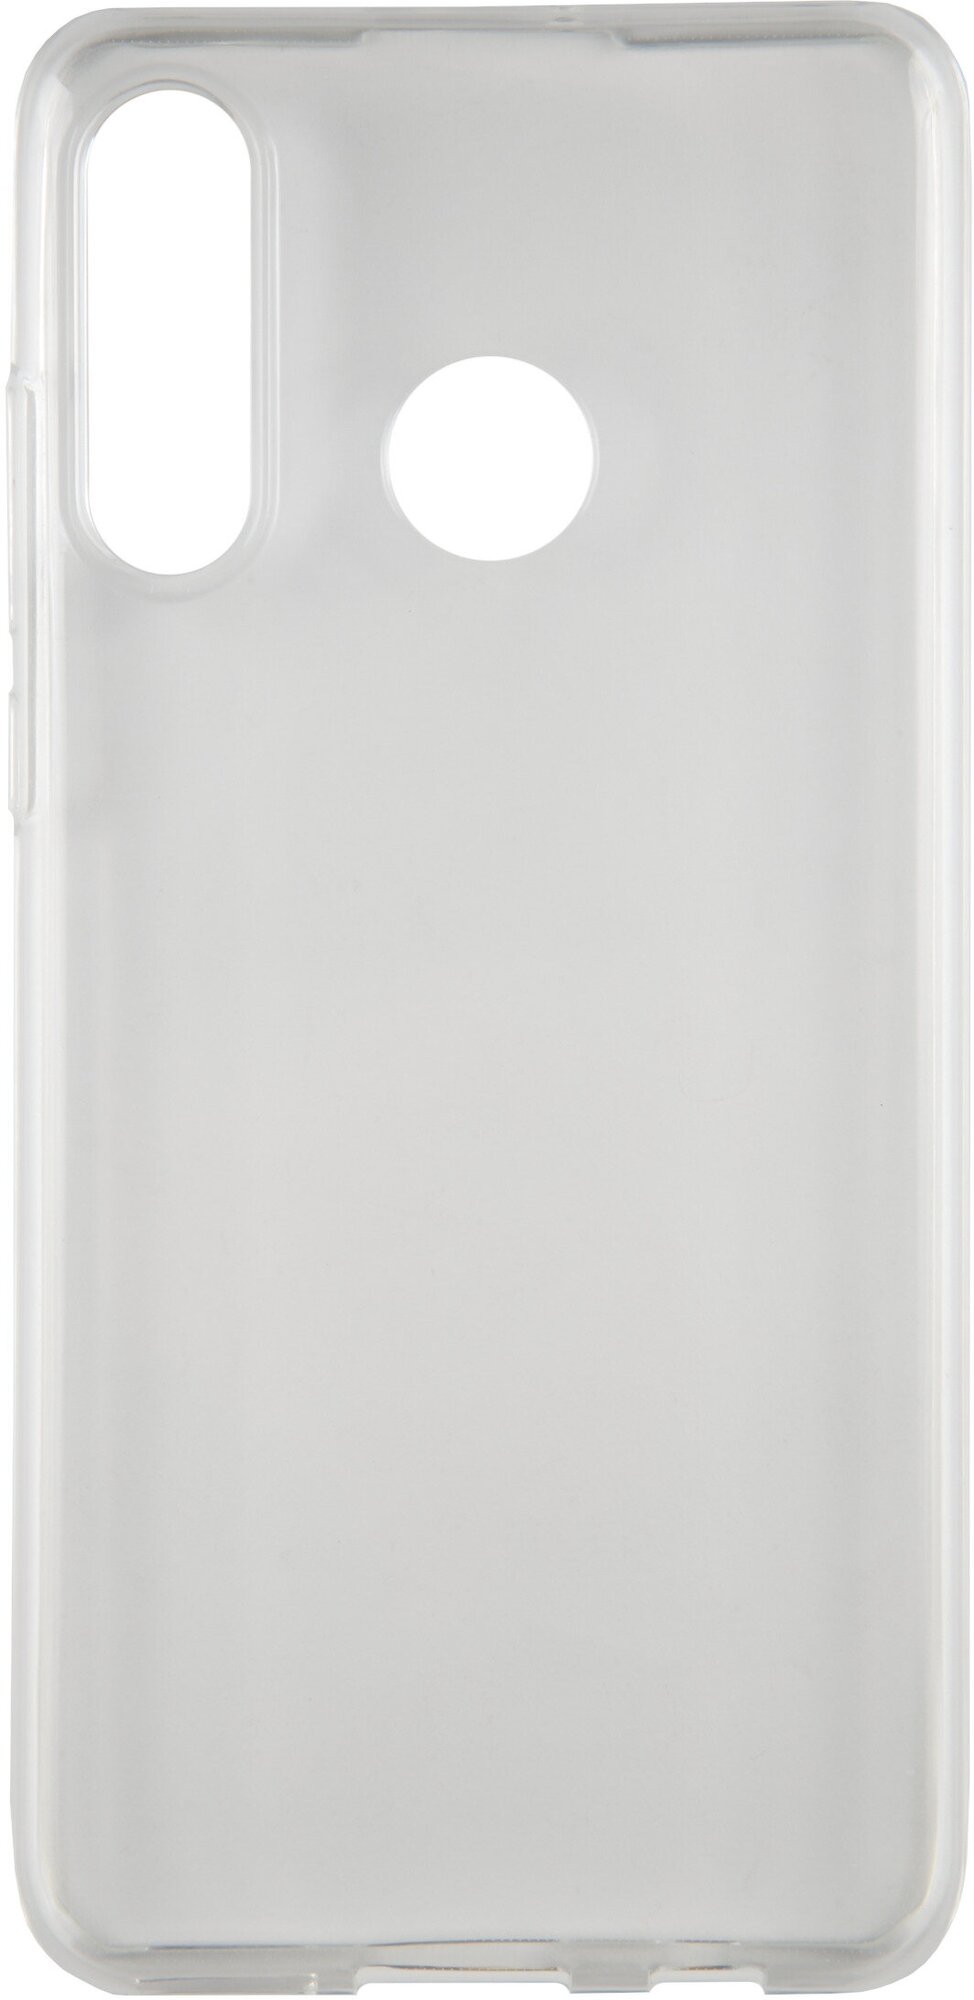 Защитный чехол-бампер на Huawei P30 Lite прозрачный/Накладка на Хуавэй П30 Лайт/ Силиконовый чехол на Huawei P30 Lite/ Накладка на смартфон/ Huawei/Х уавей